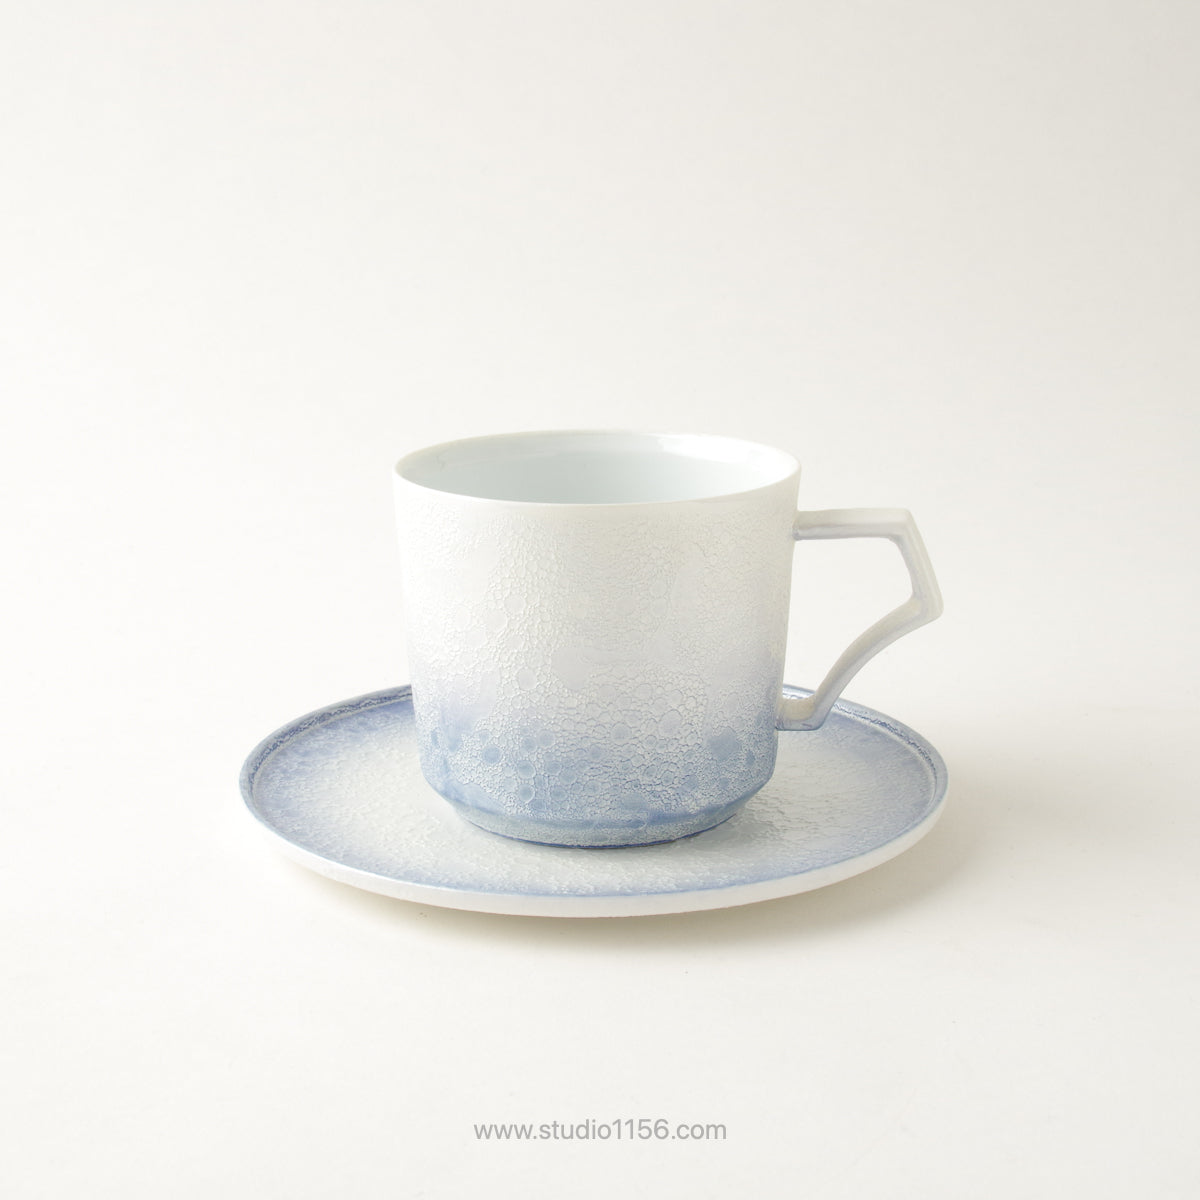 有田焼 [強化磁器] frameコーヒーカップ 200ml AHJ 渕青白 ARITA HASAMI JAPAN Studio1156